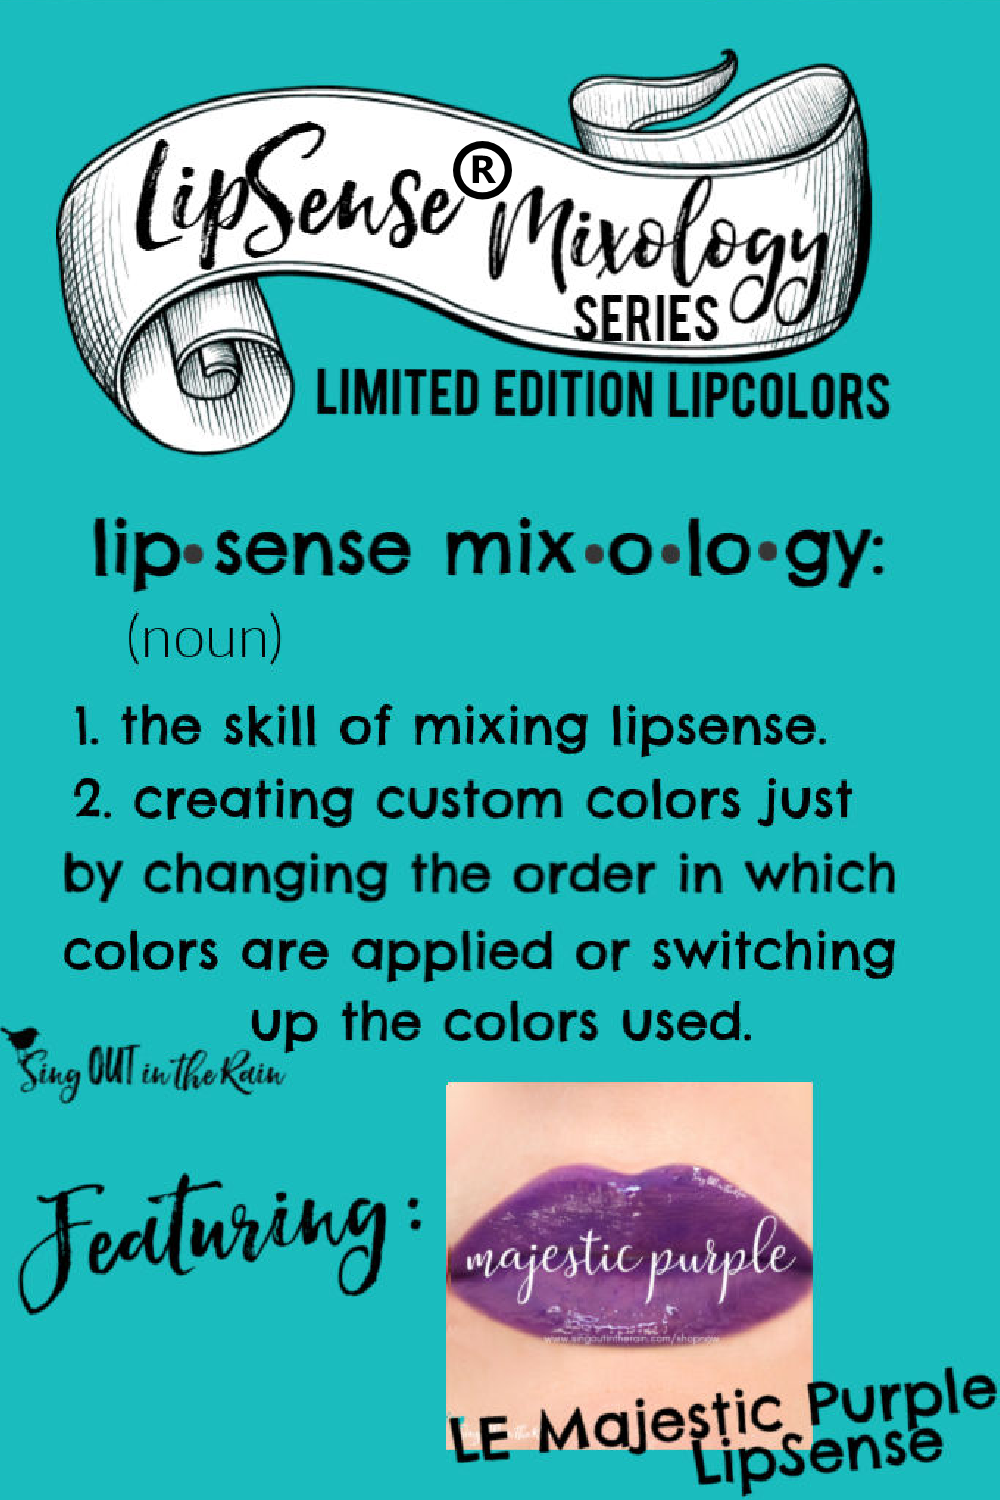 The Ultimate Guide to Majestic Purple LipSense Mixology